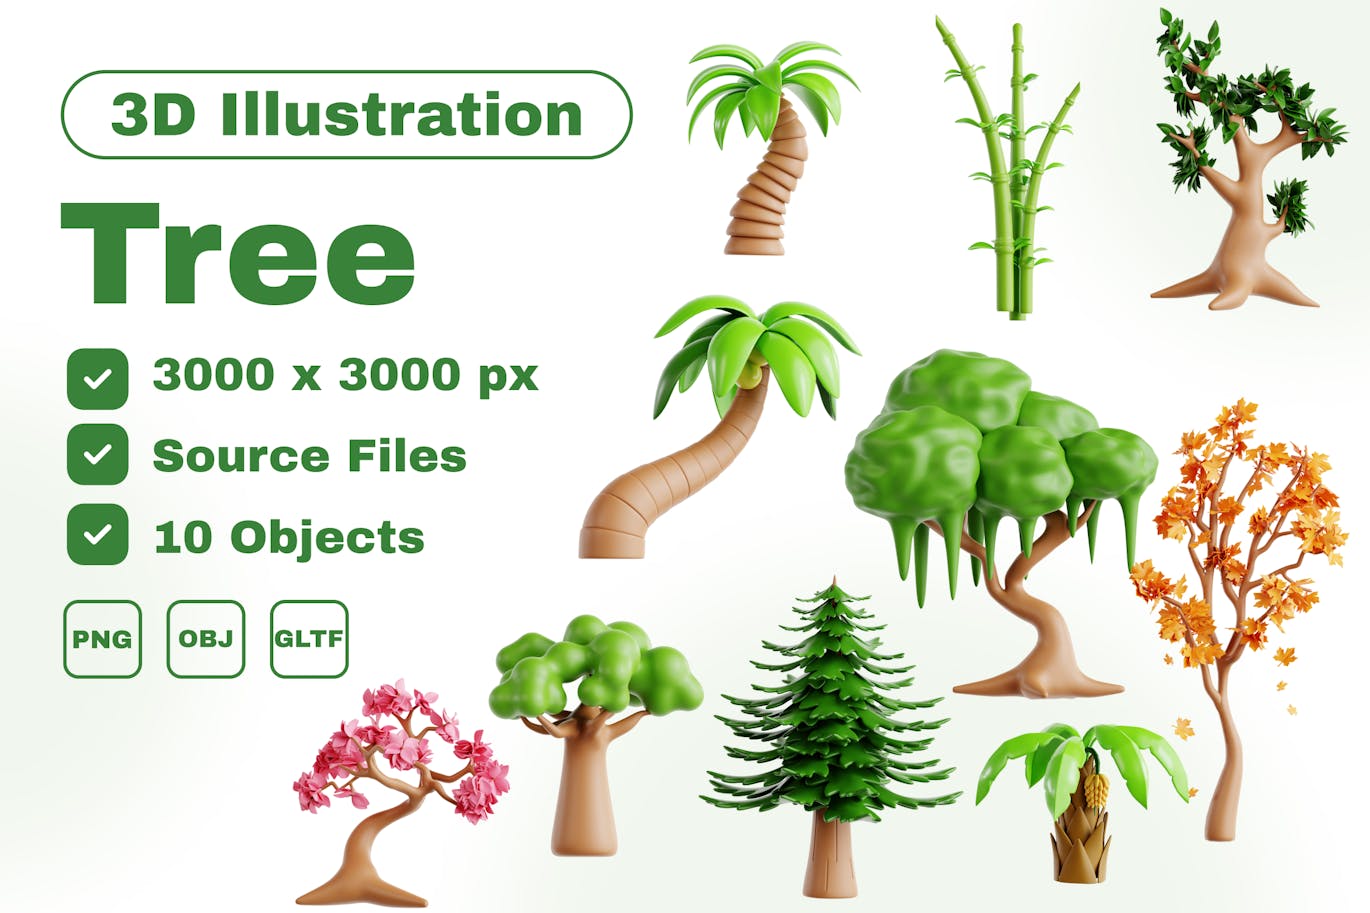 多种树木 3D 图标集 (PNG,OBJ)